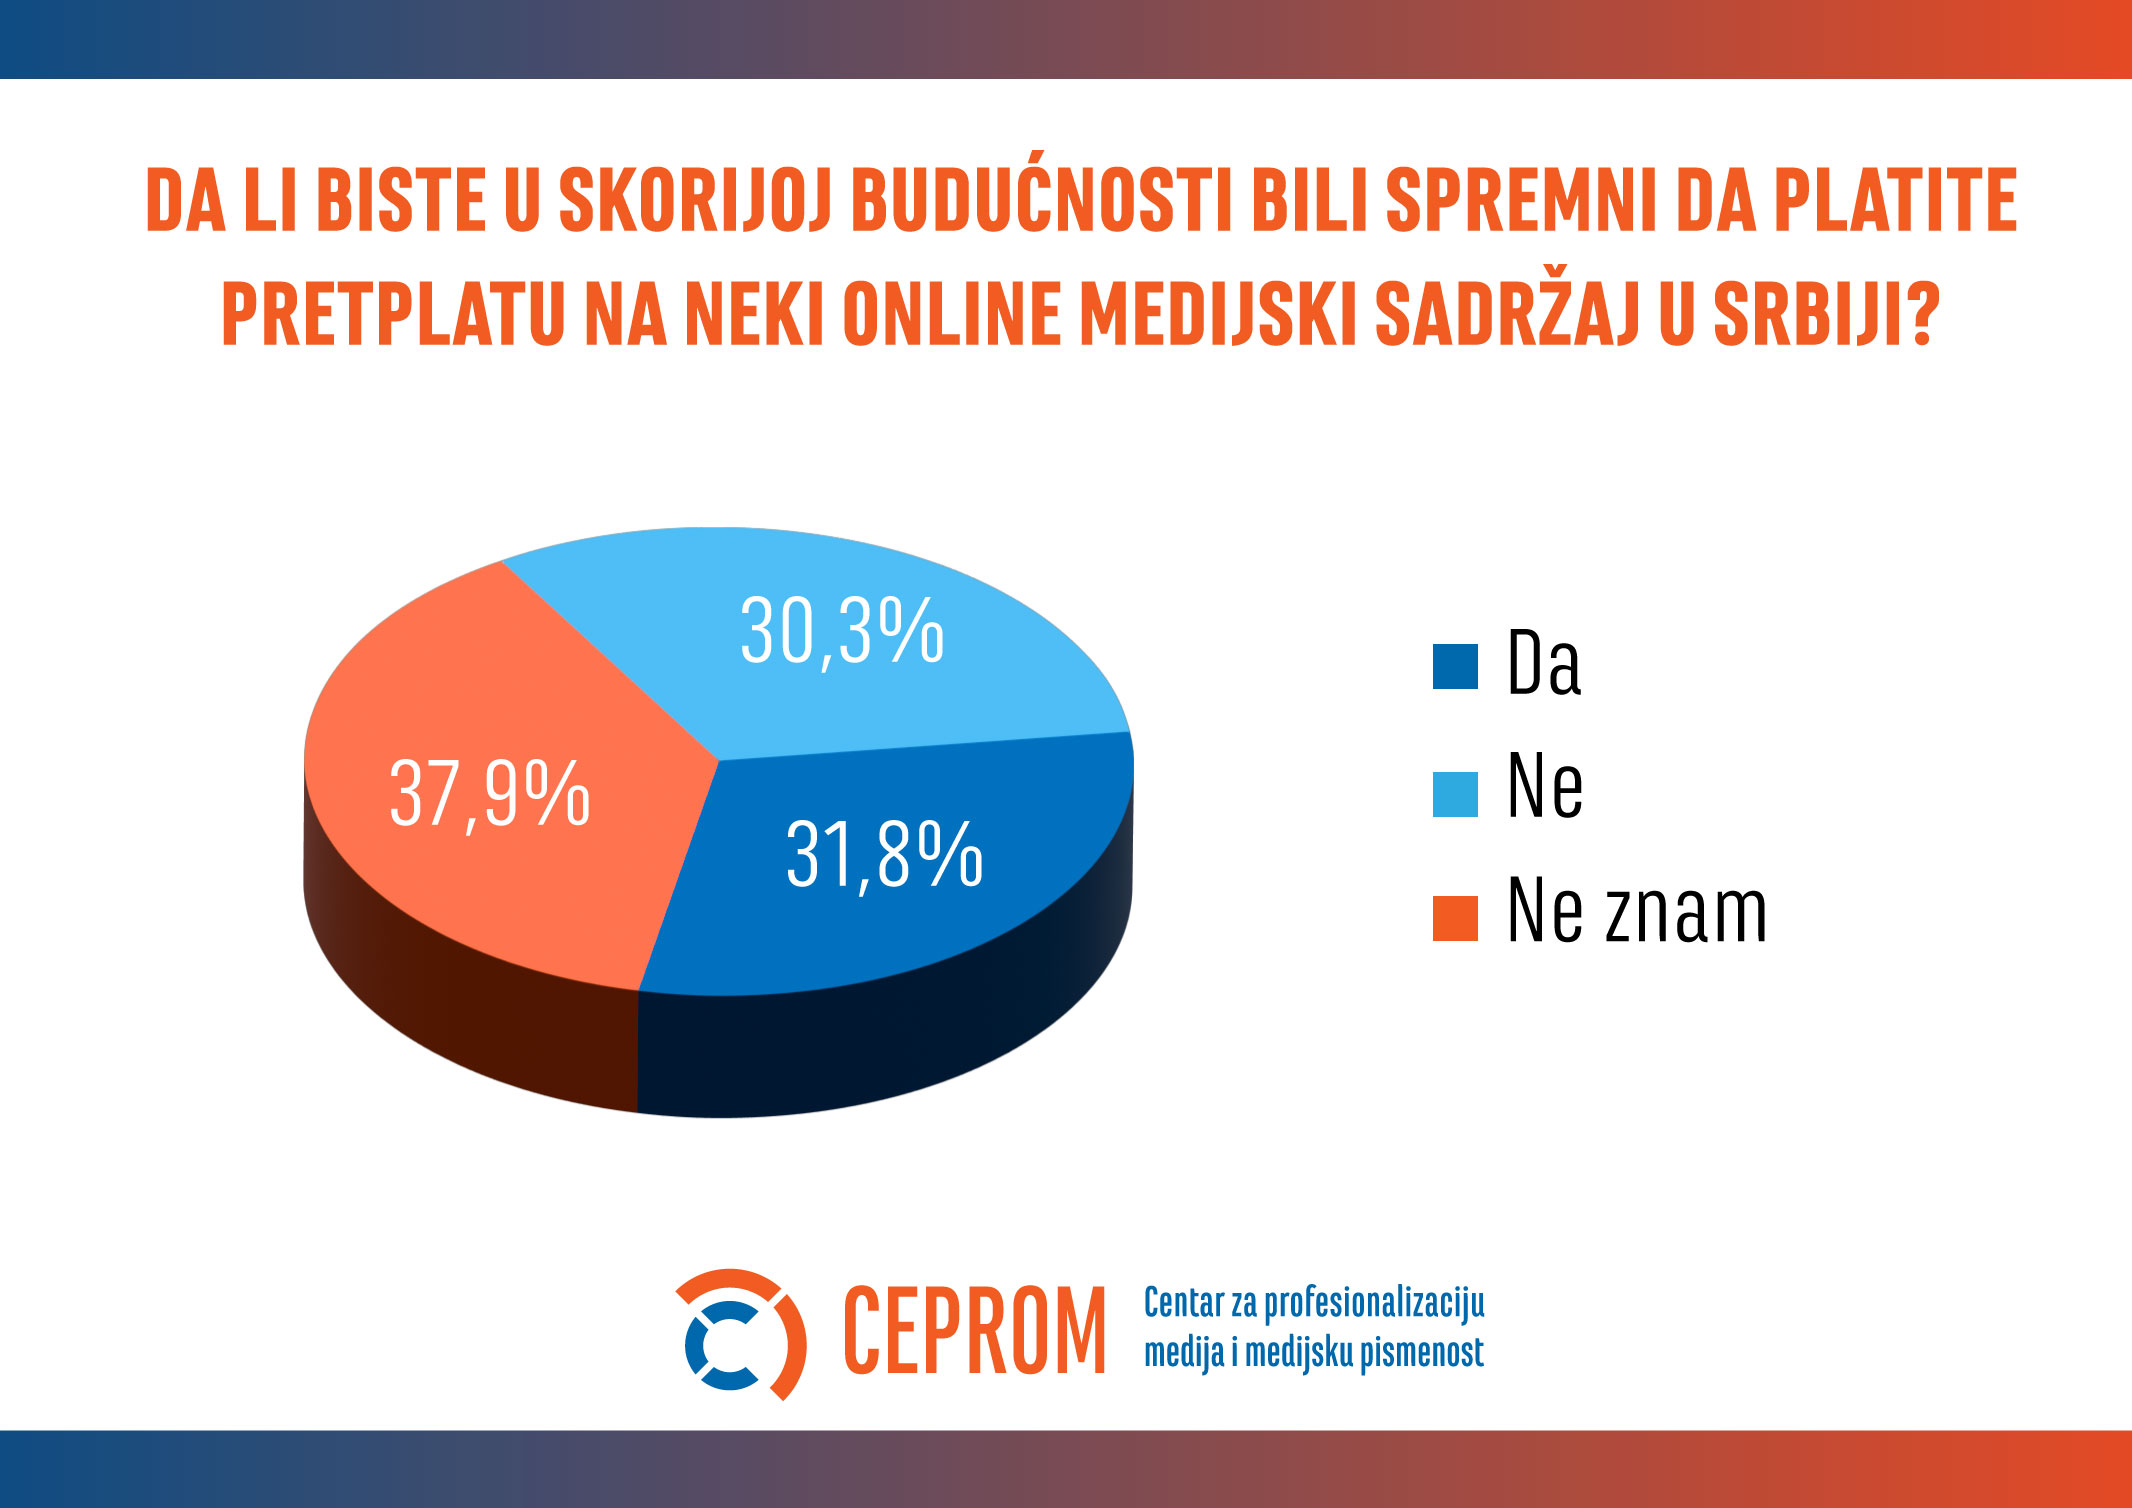 Kvalitetno novinarstvo i ekskluzivan sadržaj ključni za pretplate na onlajn medije u Srbiji 2